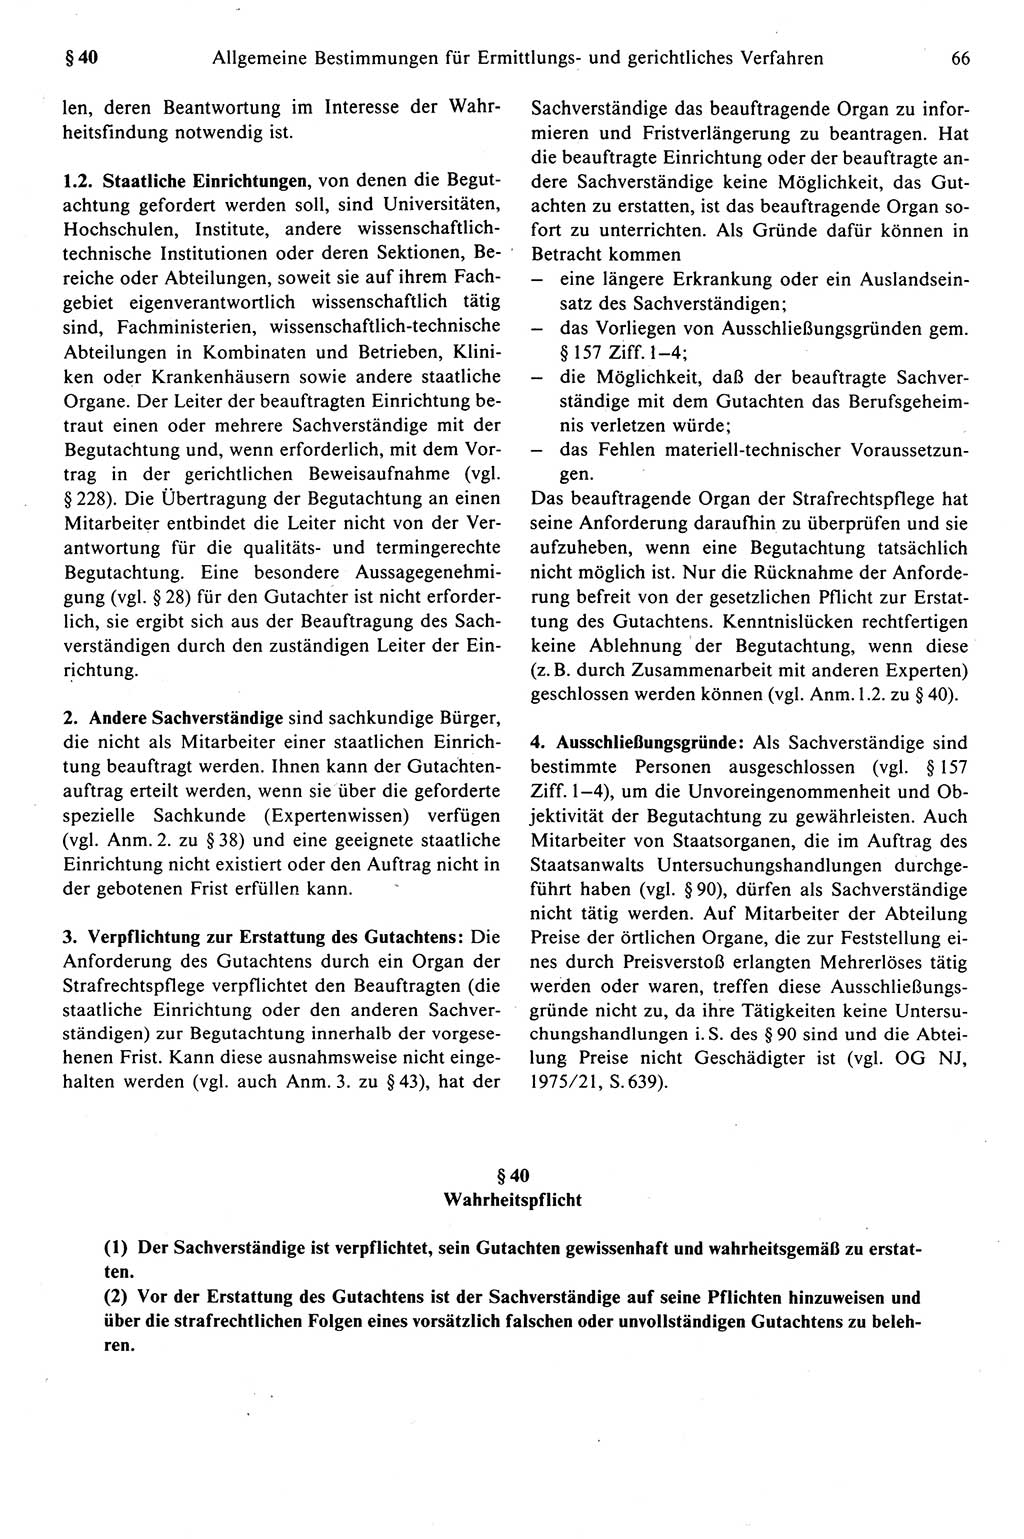 Strafprozeßrecht der DDR (Deutsche Demokratische Republik), Kommentar zur Strafprozeßordnung (StPO) 1989, Seite 66 (Strafprozeßr. DDR Komm. StPO 1989, S. 66)